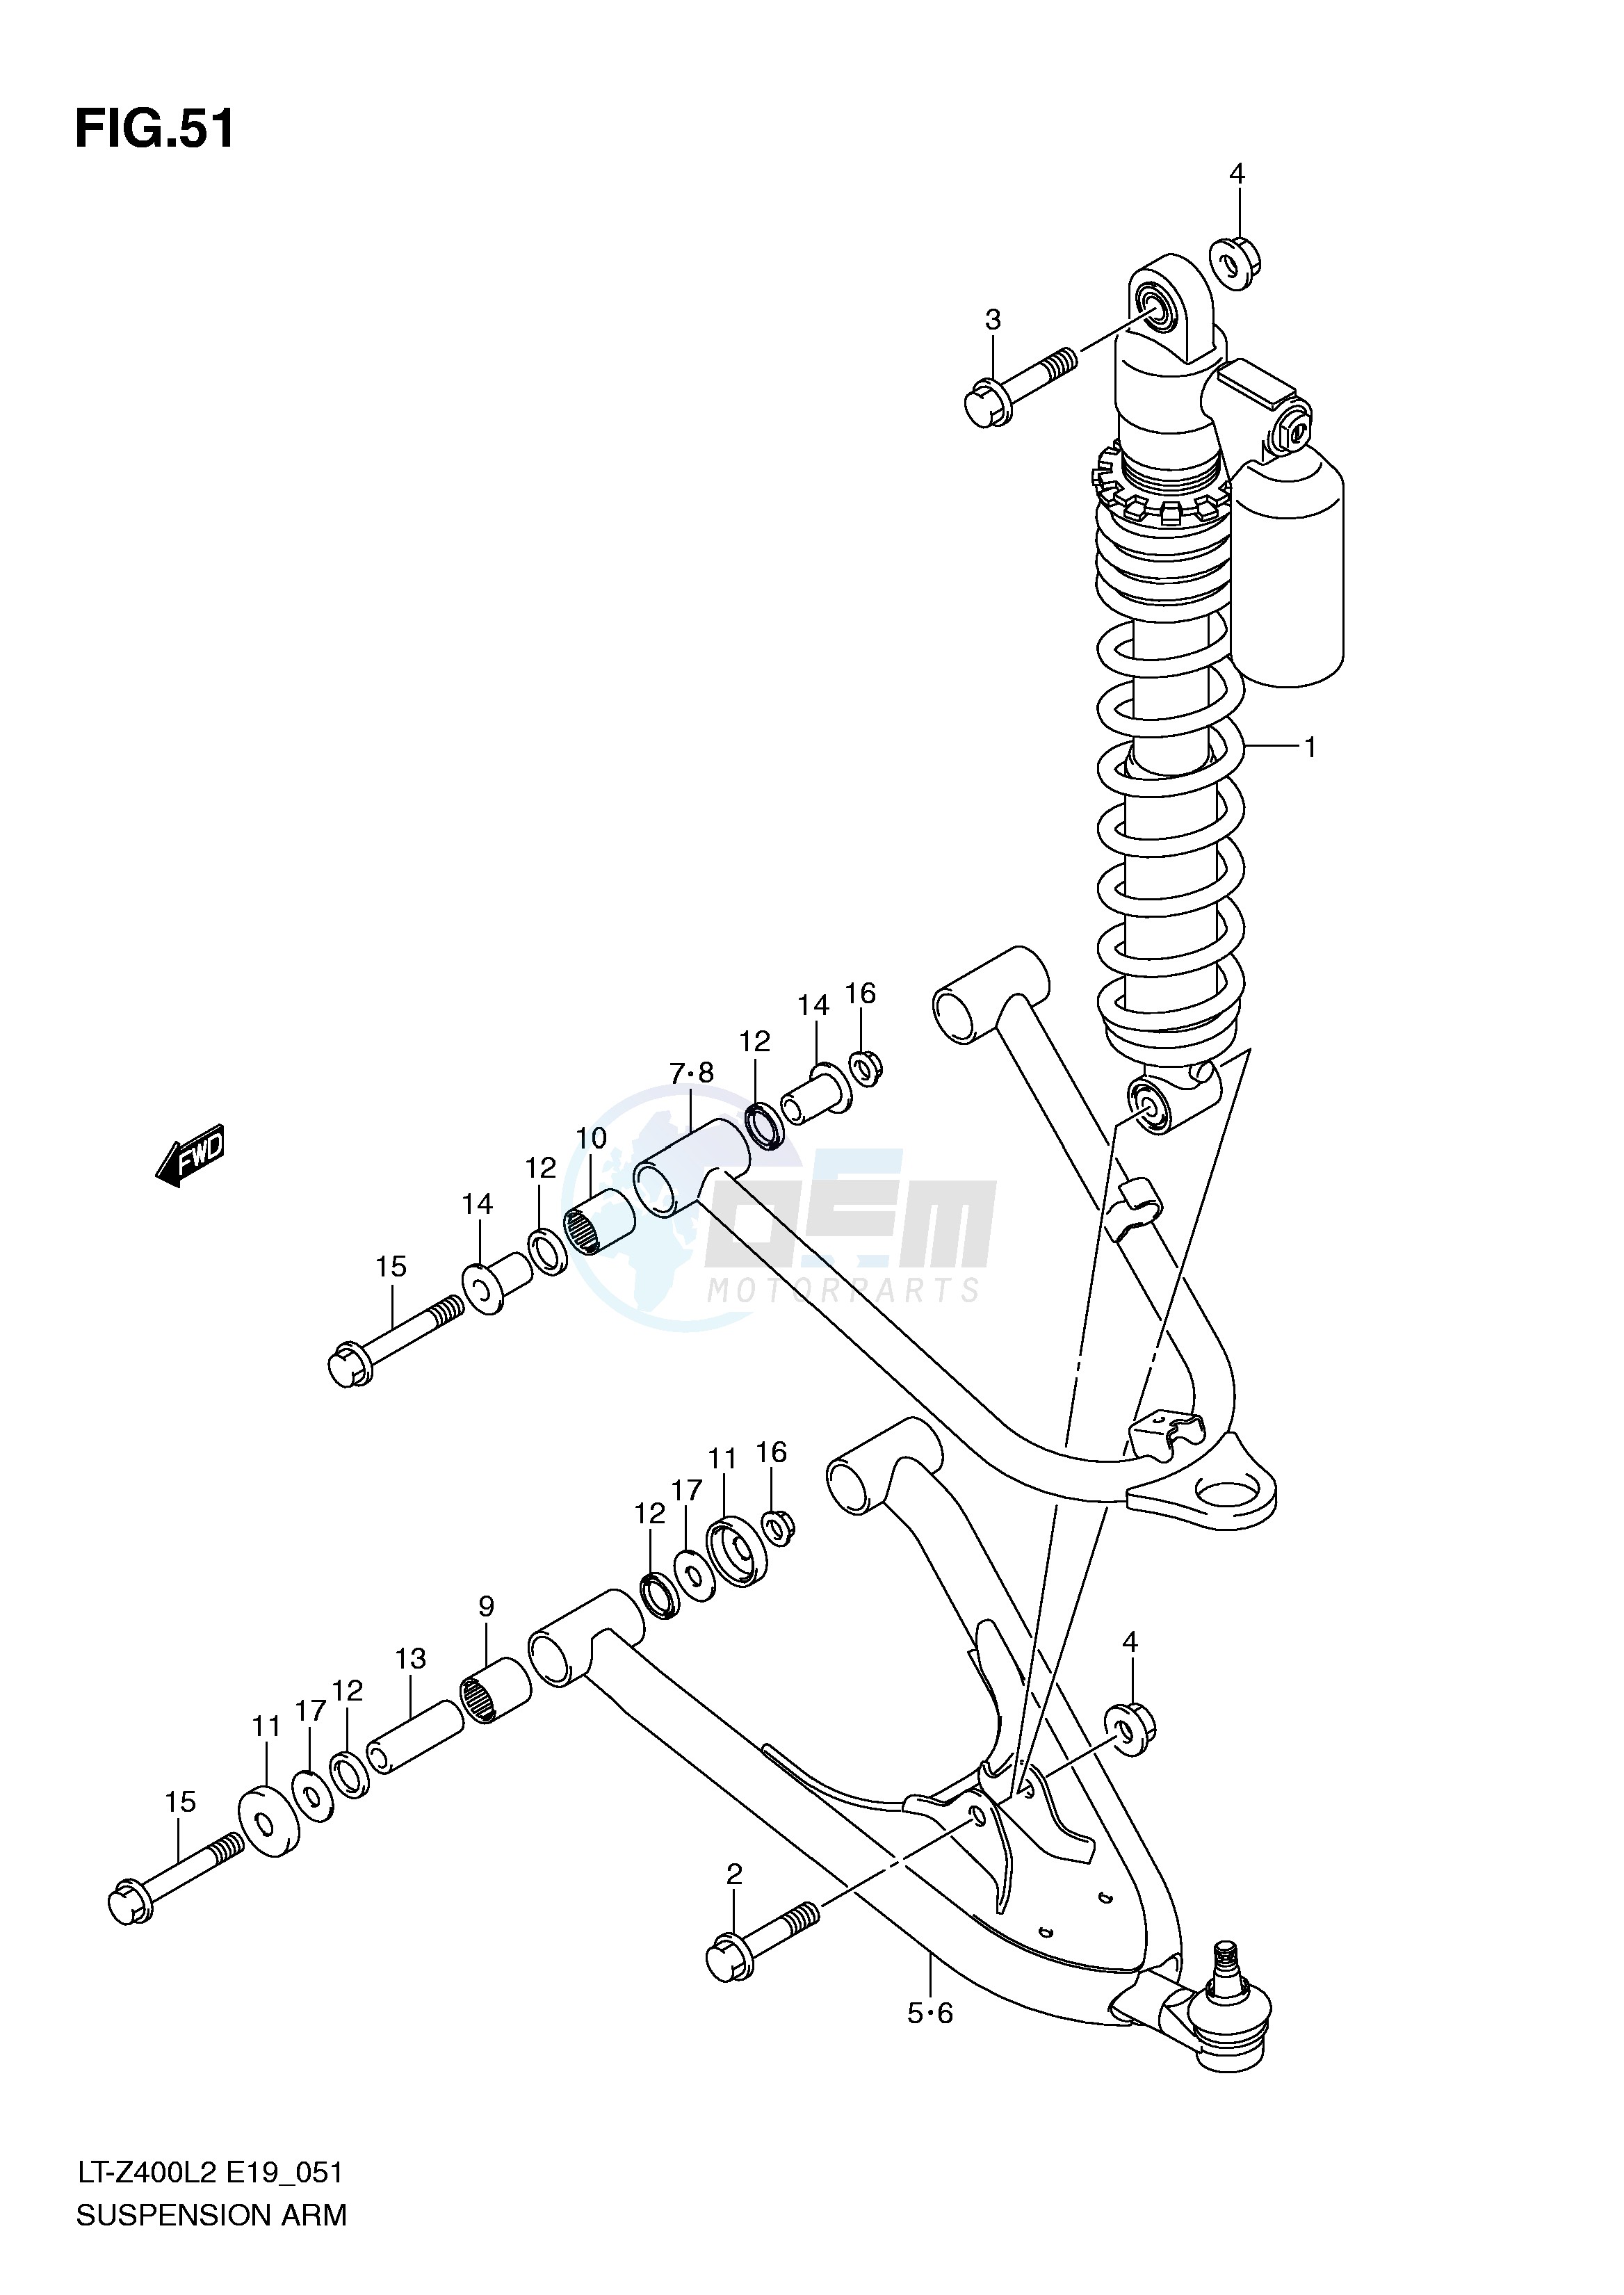 SUSPENSION ARM (LT-Z400L2 E19) image